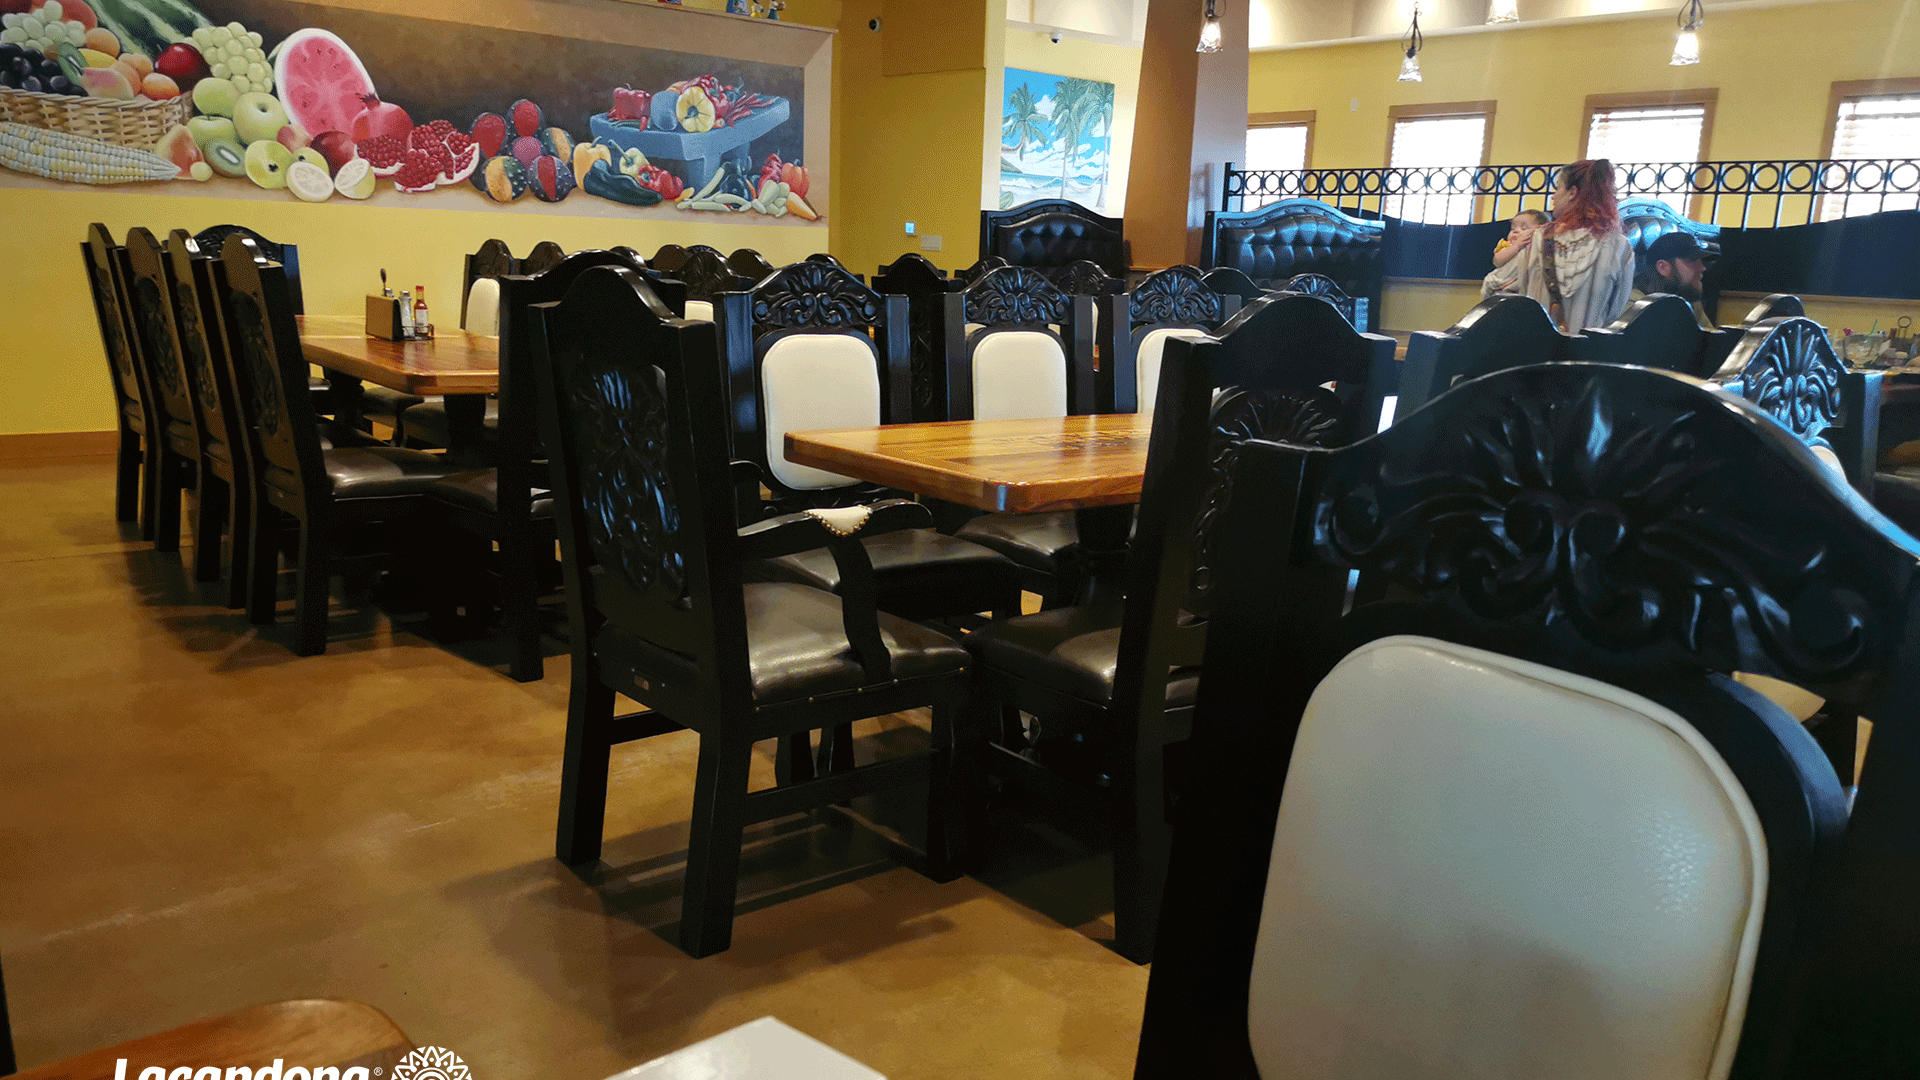 Cliente Restaurante "El Ixtapa" | Muebles Lacandona